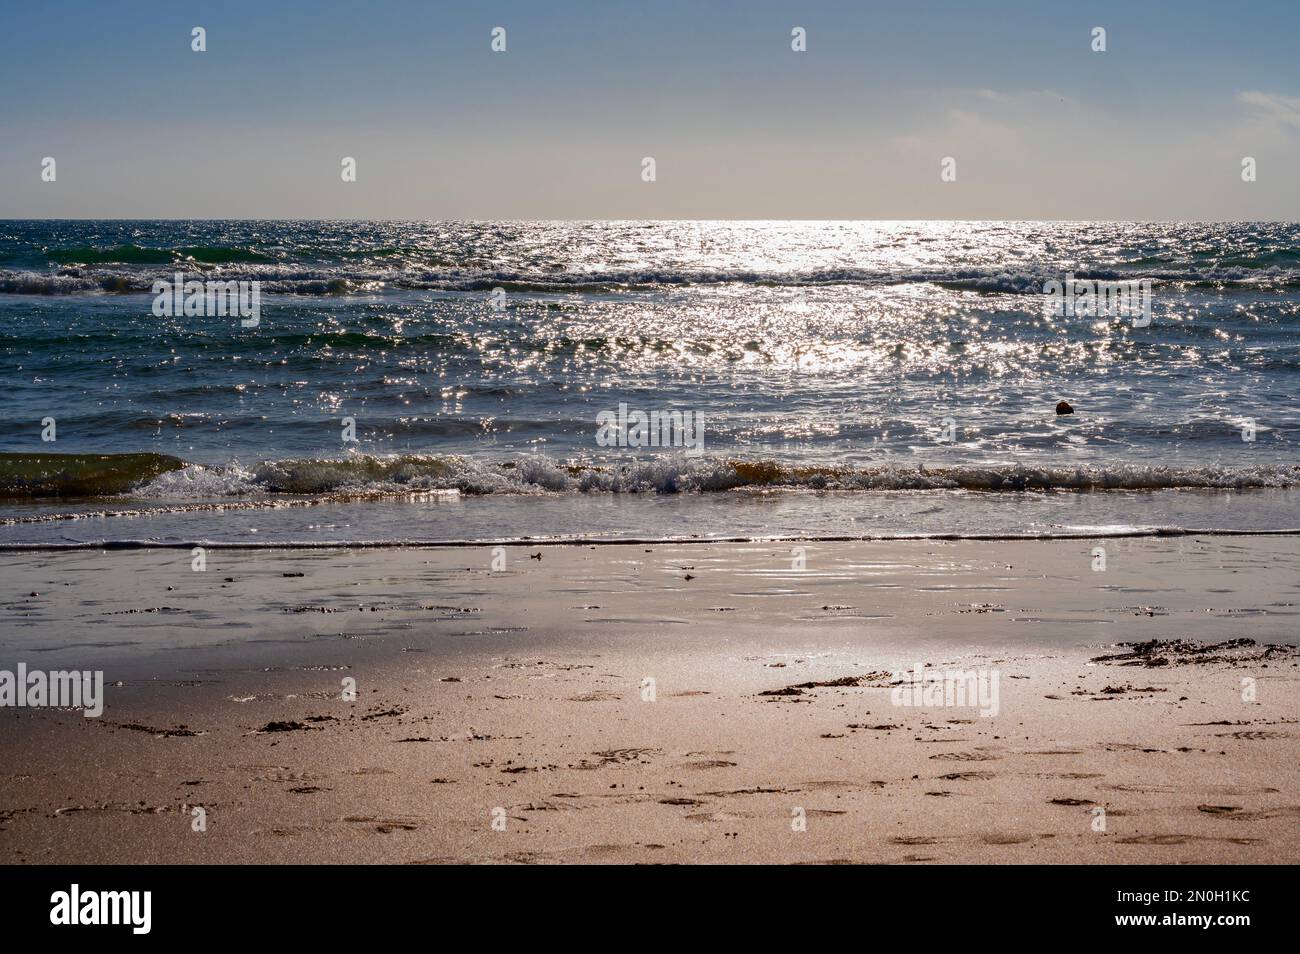 Le onde dell'oceano si infrangono contro una spiaggia sabbiosa in una giornata di sole Foto Stock